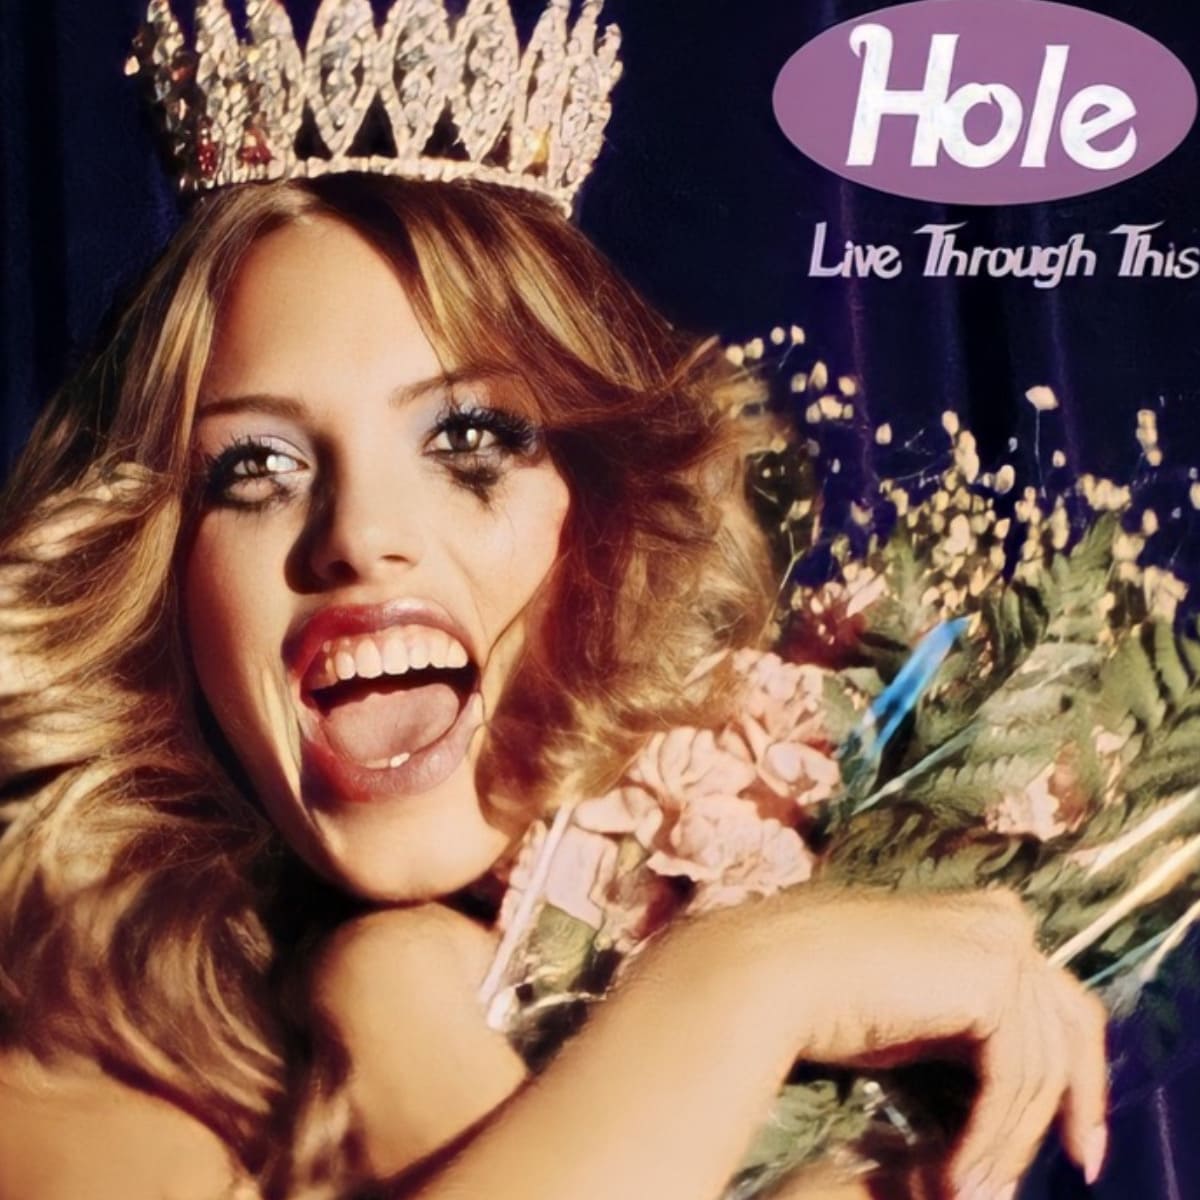 Capa do álbum "Live Through This", da banda Hole